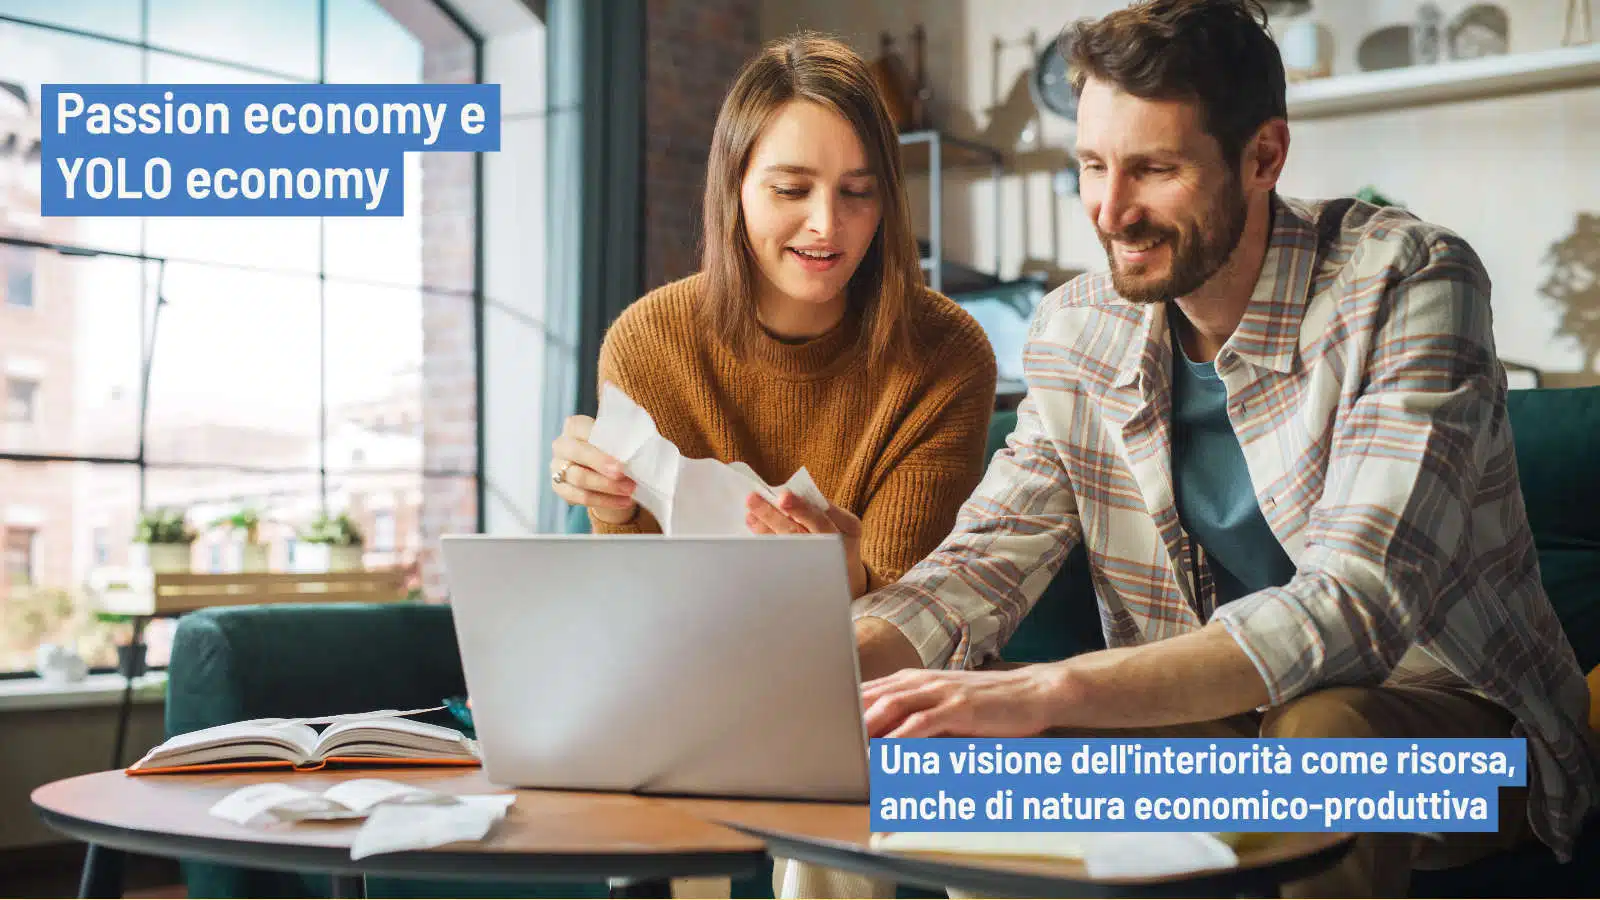 Passion economy e YOLO economy approcci innovativi alla economia